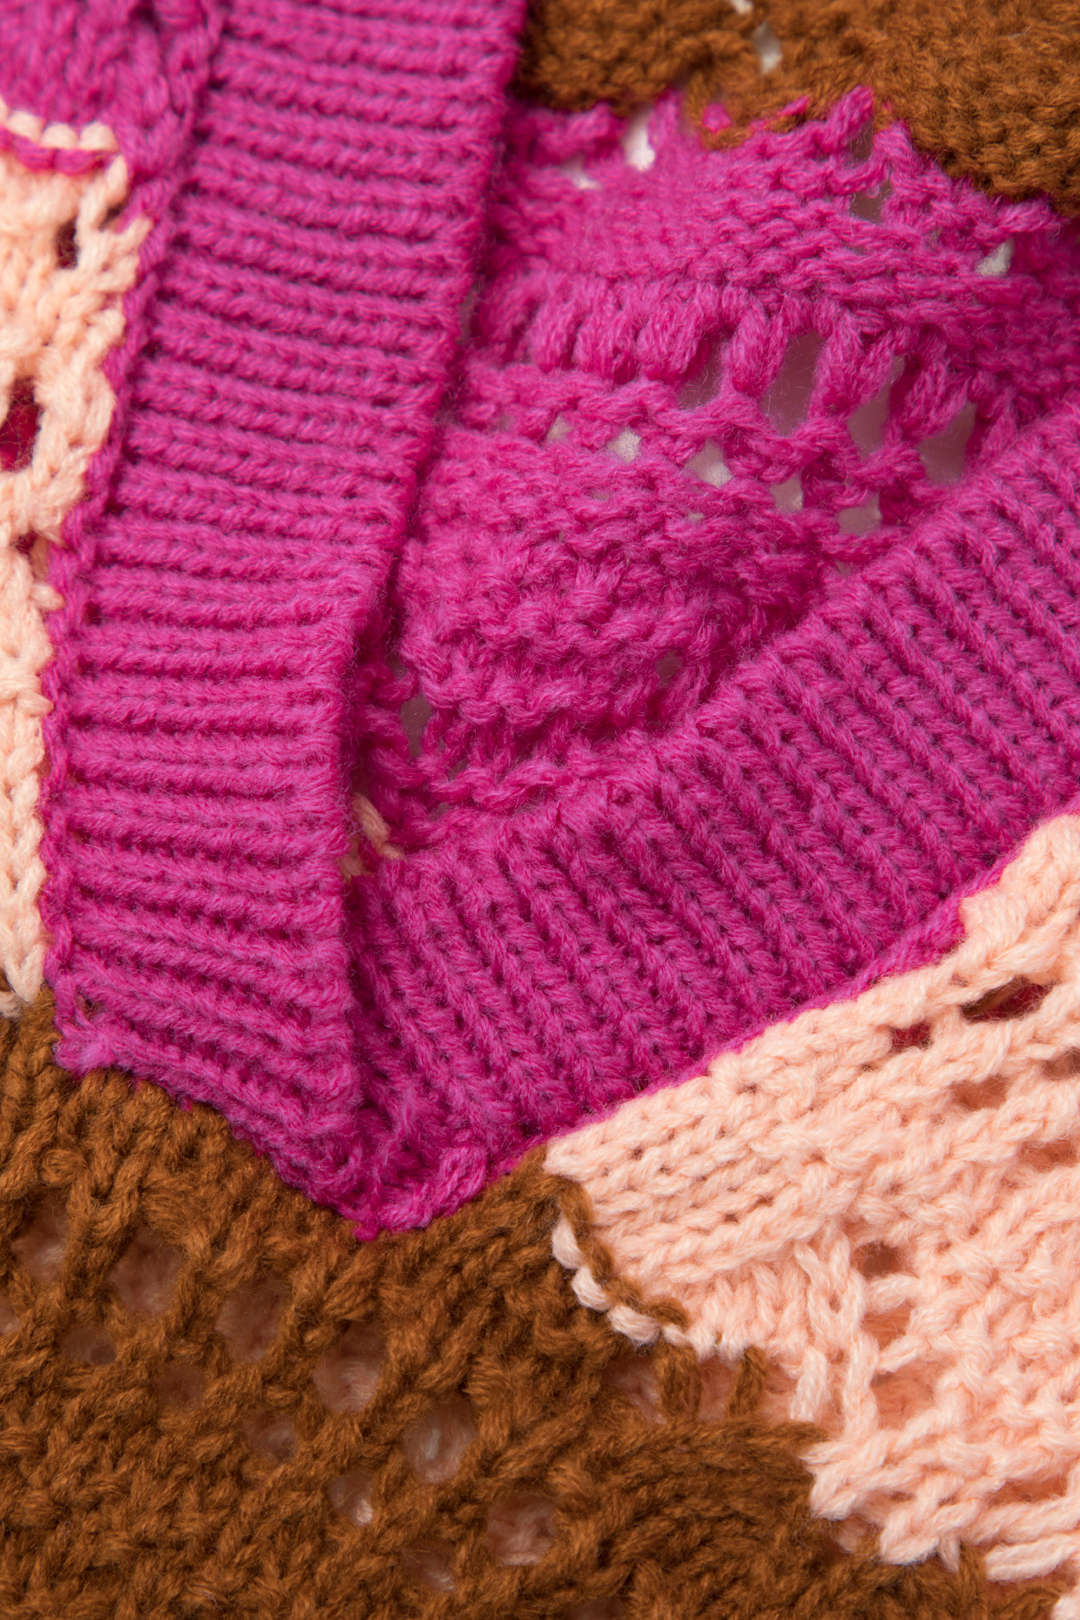 Multicolored Stripe Crochet V-neck Knit Top